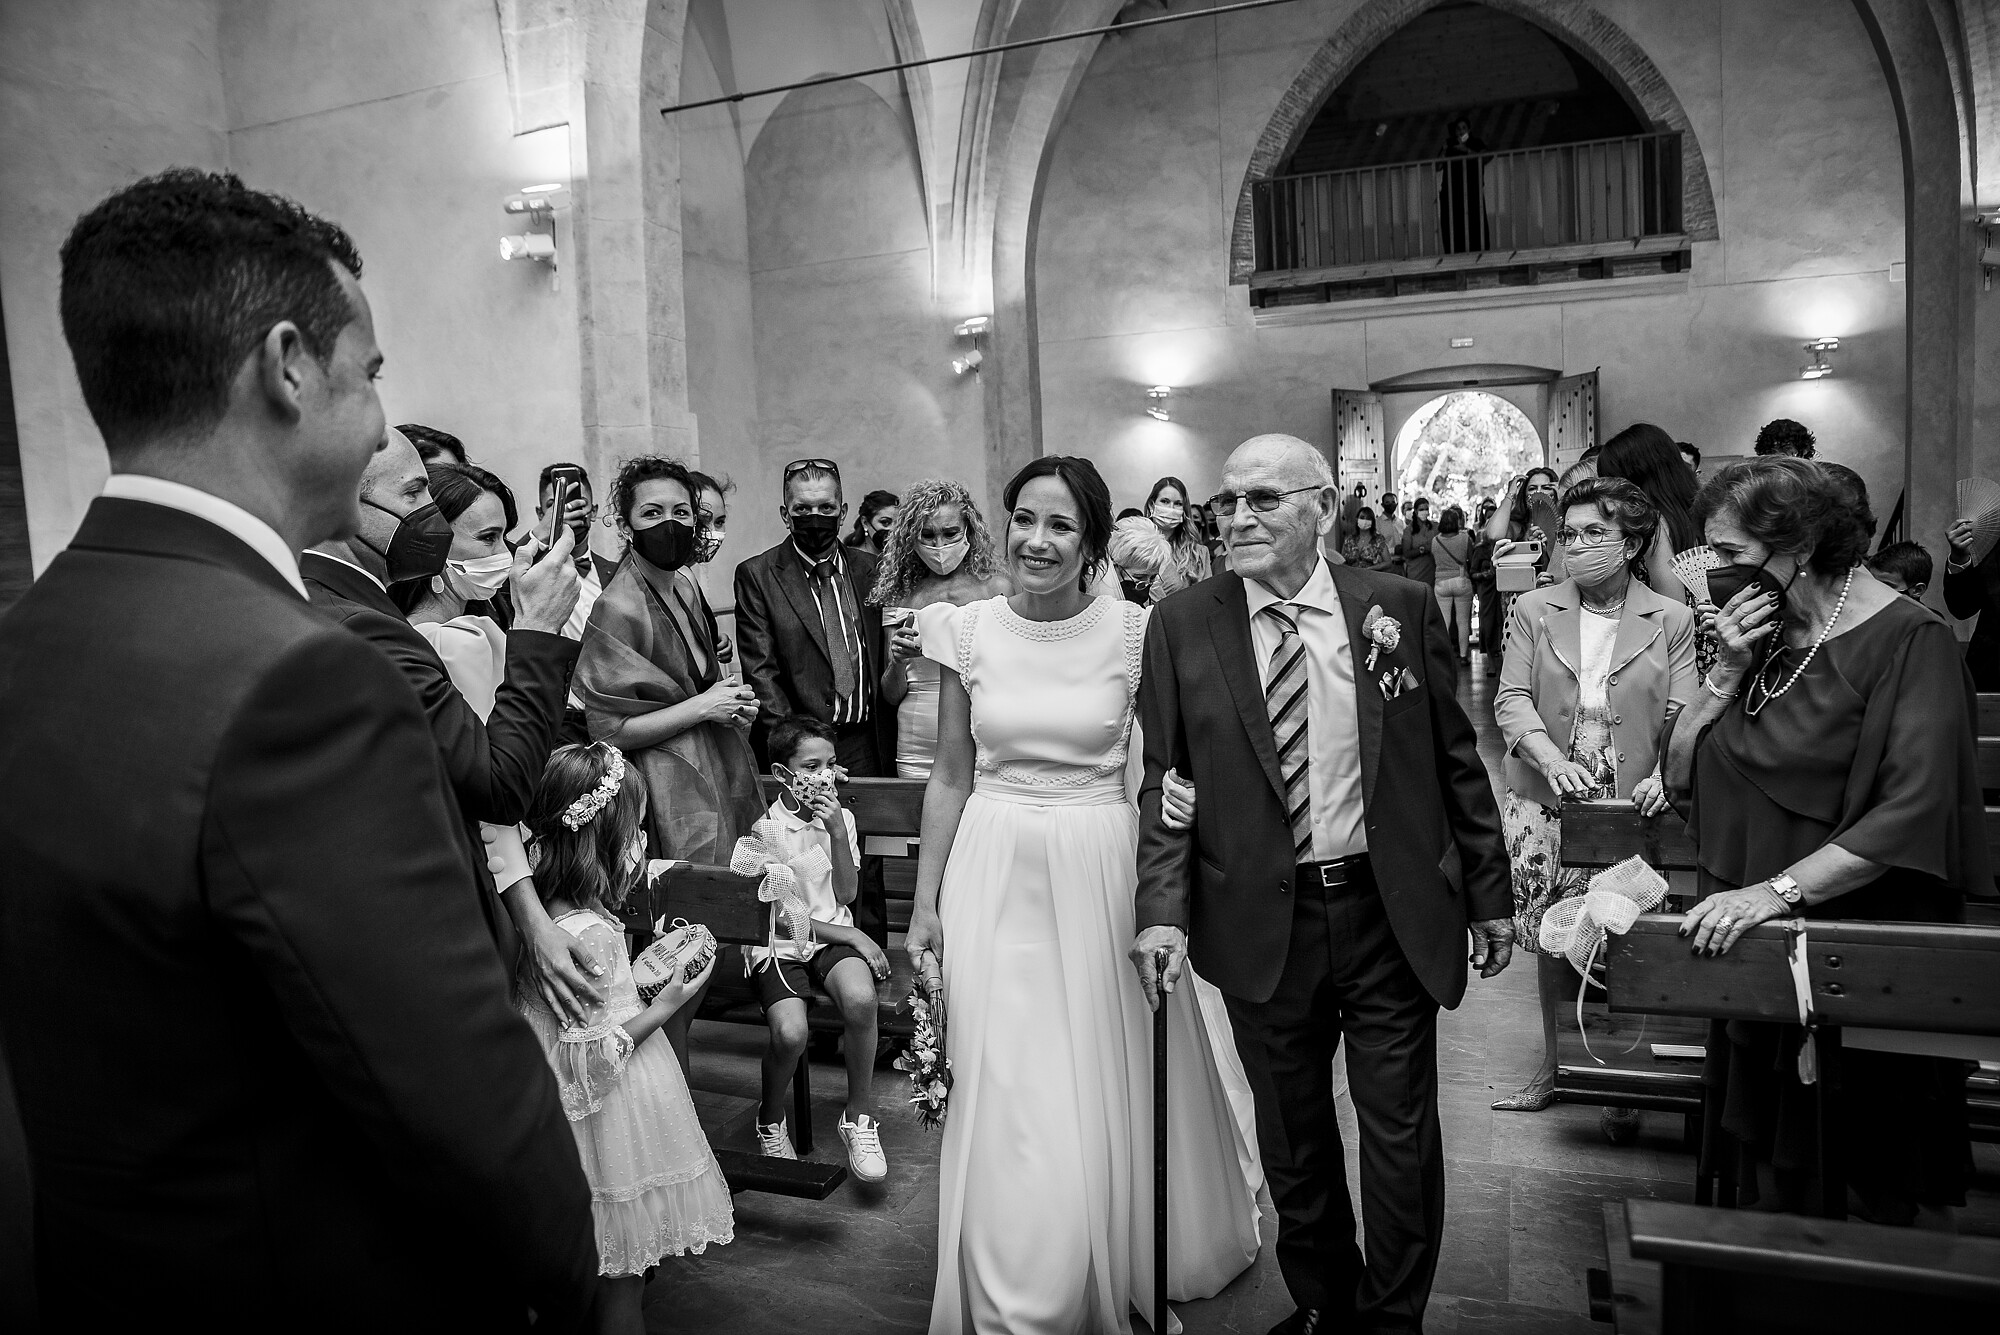 Elhilorojofotografia - boda-maria-y-victor-entrada-novia.jpg